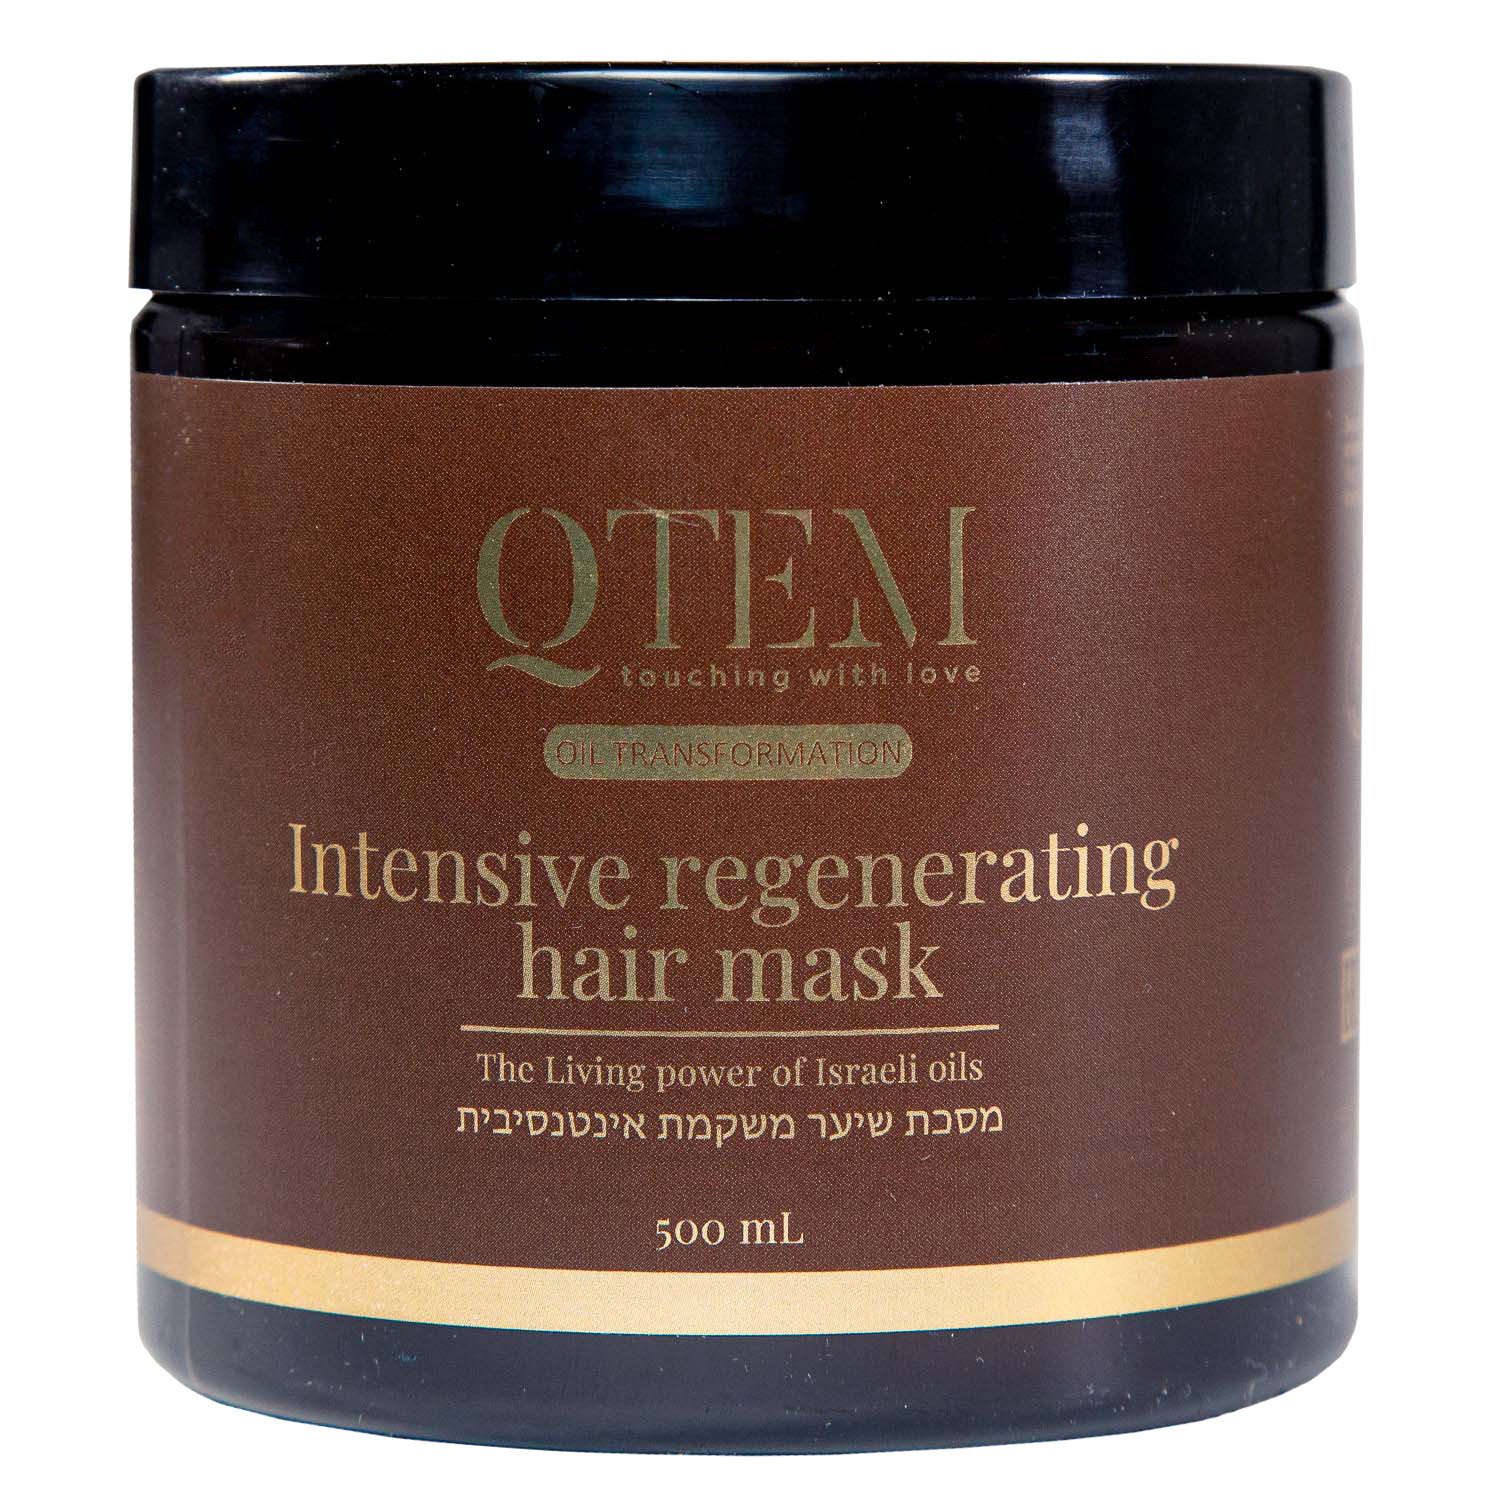 Qtem Интенсивная восстанавливающая маска для волос, 500 мл (Qtem, Oil Transformation)